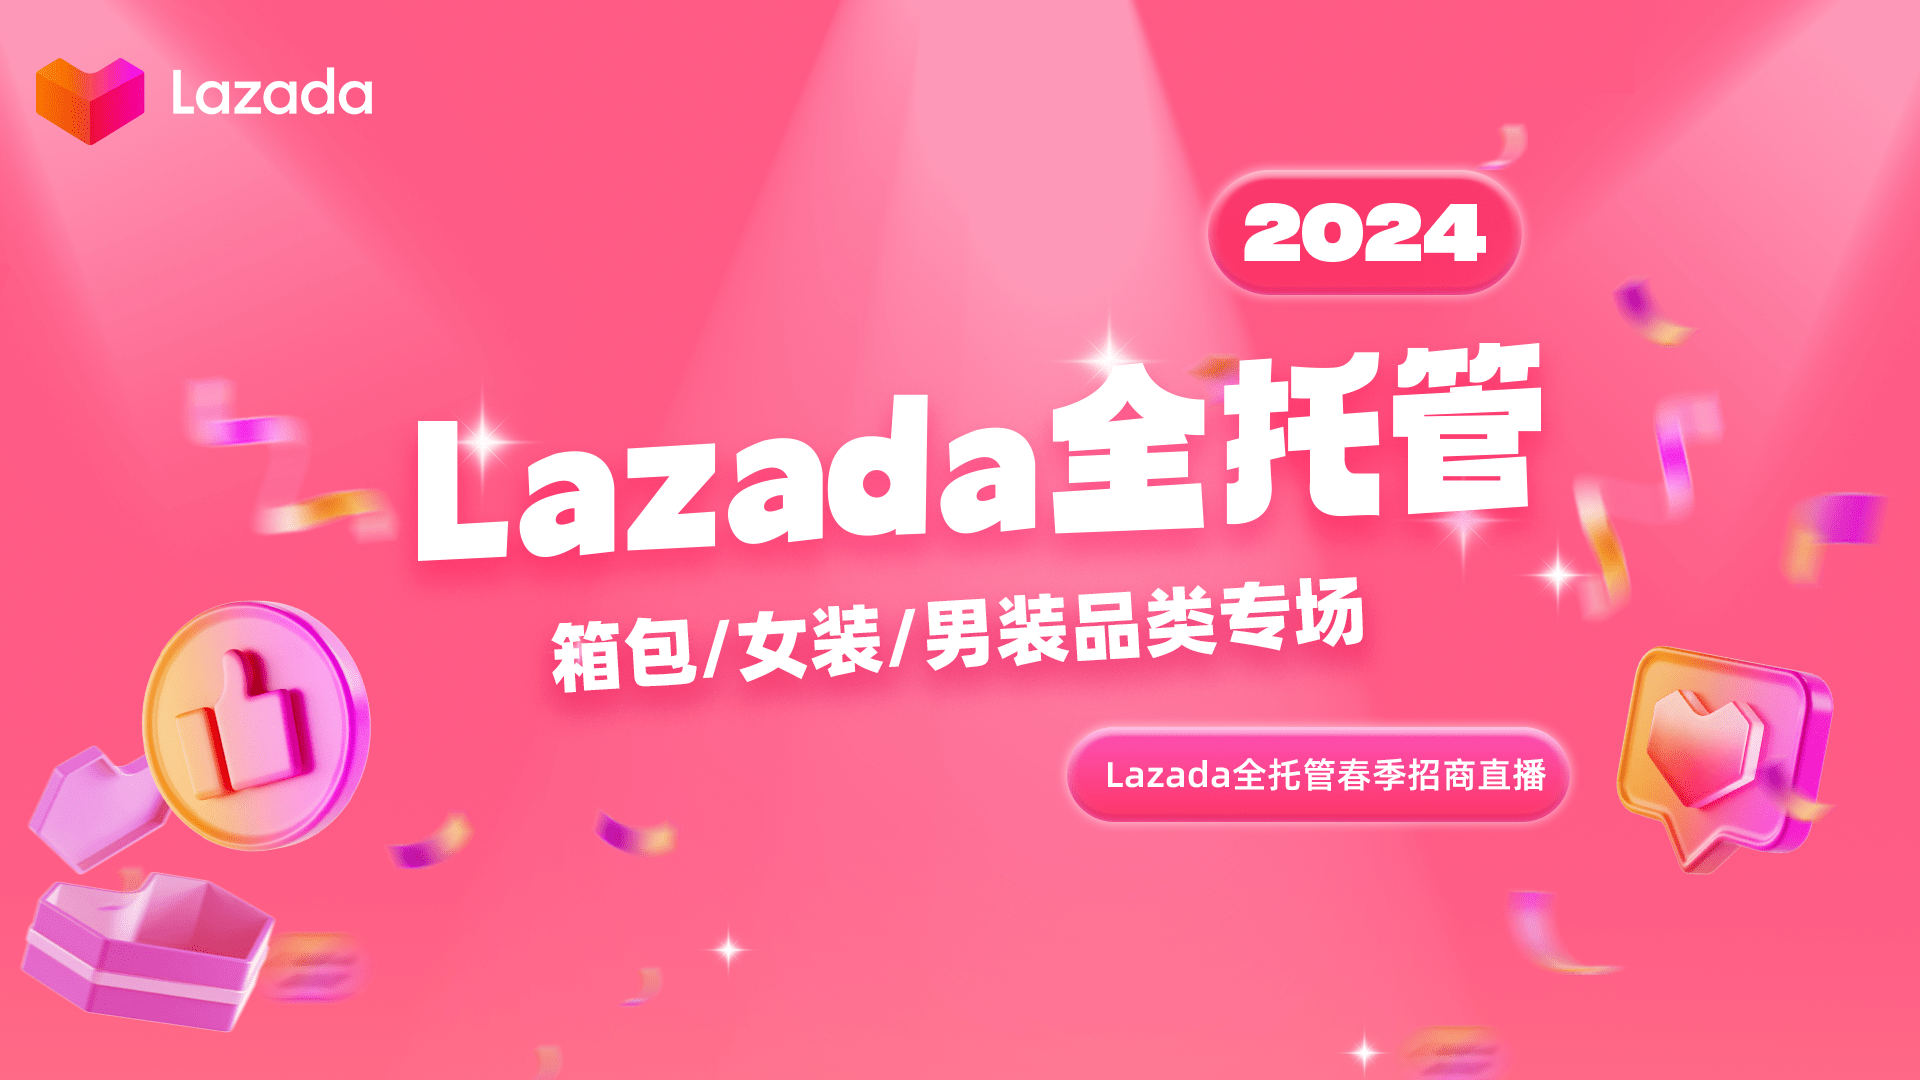 Lazada全托管——箱包/女装/男装类目专场直播